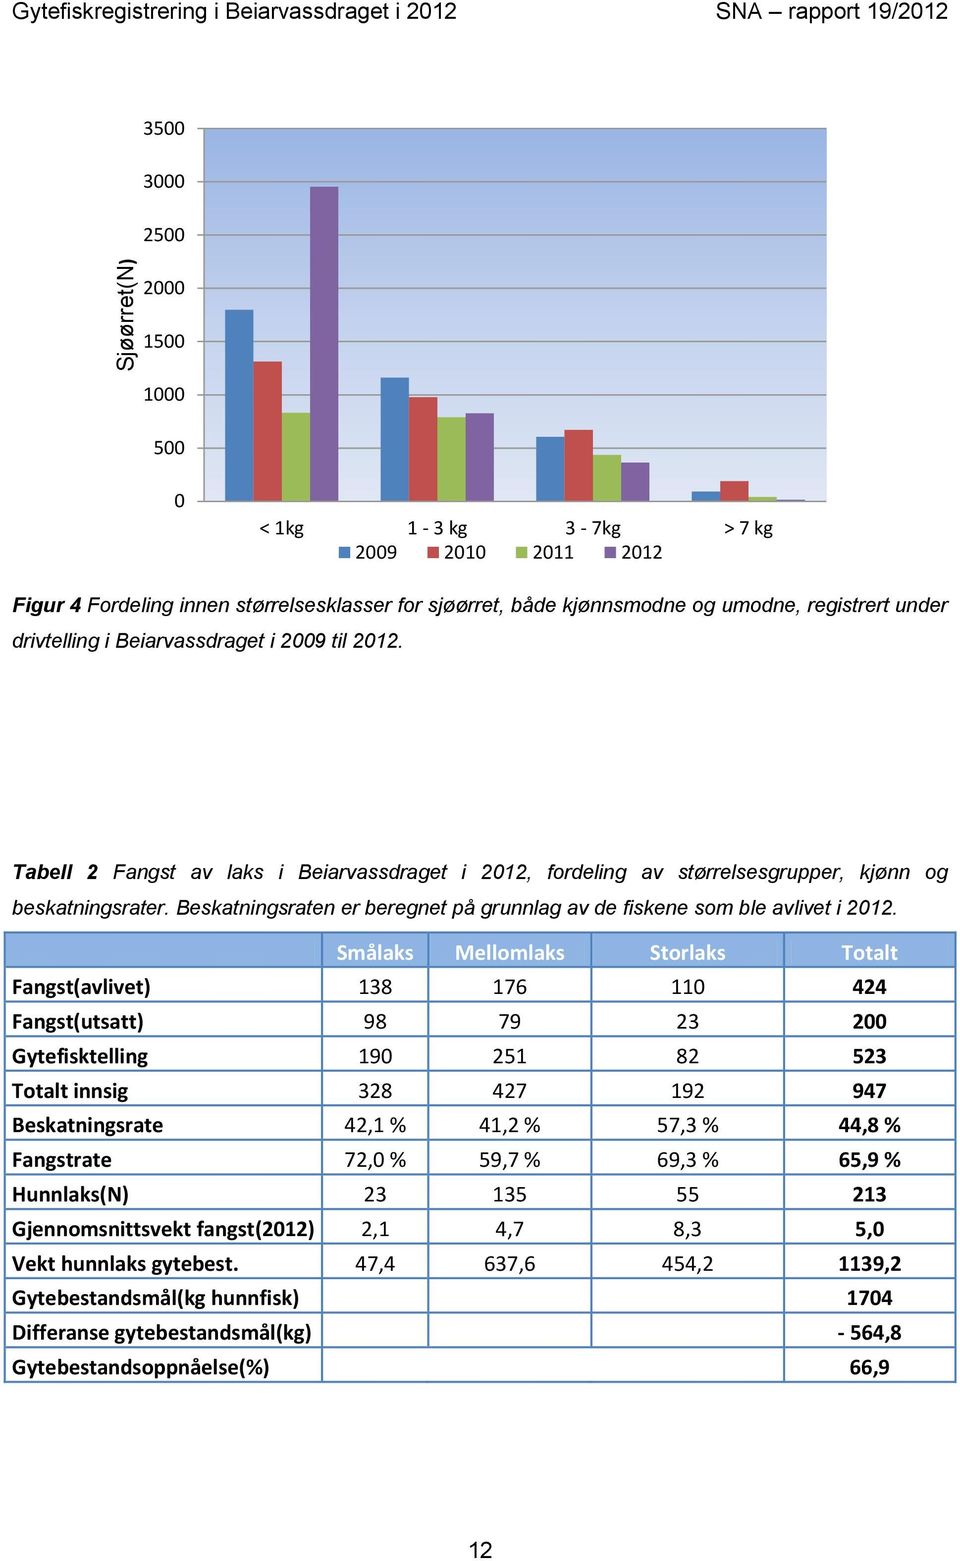 Tabell 2 Fangst av laks i Beiarvassdraget i 2012, fordeling av størrelsesgrupper, kjønn og beskatningsrater. Beskatningsraten er beregnet på grunnlag av de fiskene som ble avlivet i 2012.